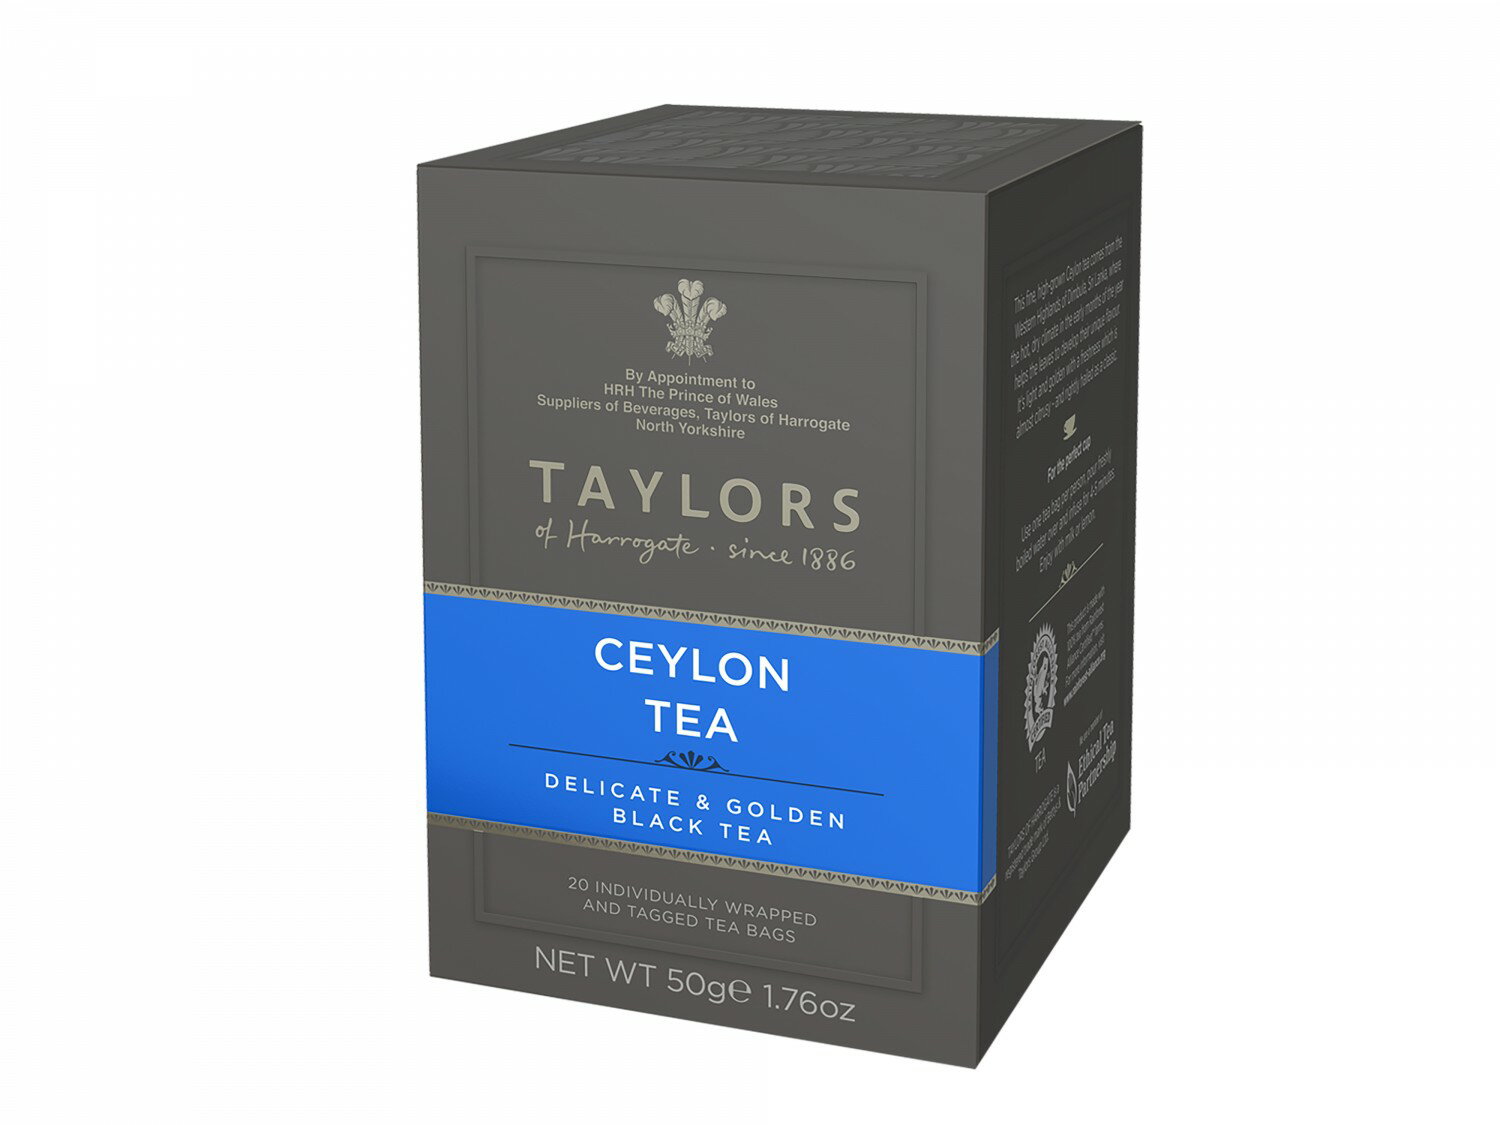 英國 Taylors 皇家錫蘭紅茶 - 皇家茶包系列 Ceylon Tea 20入/盒